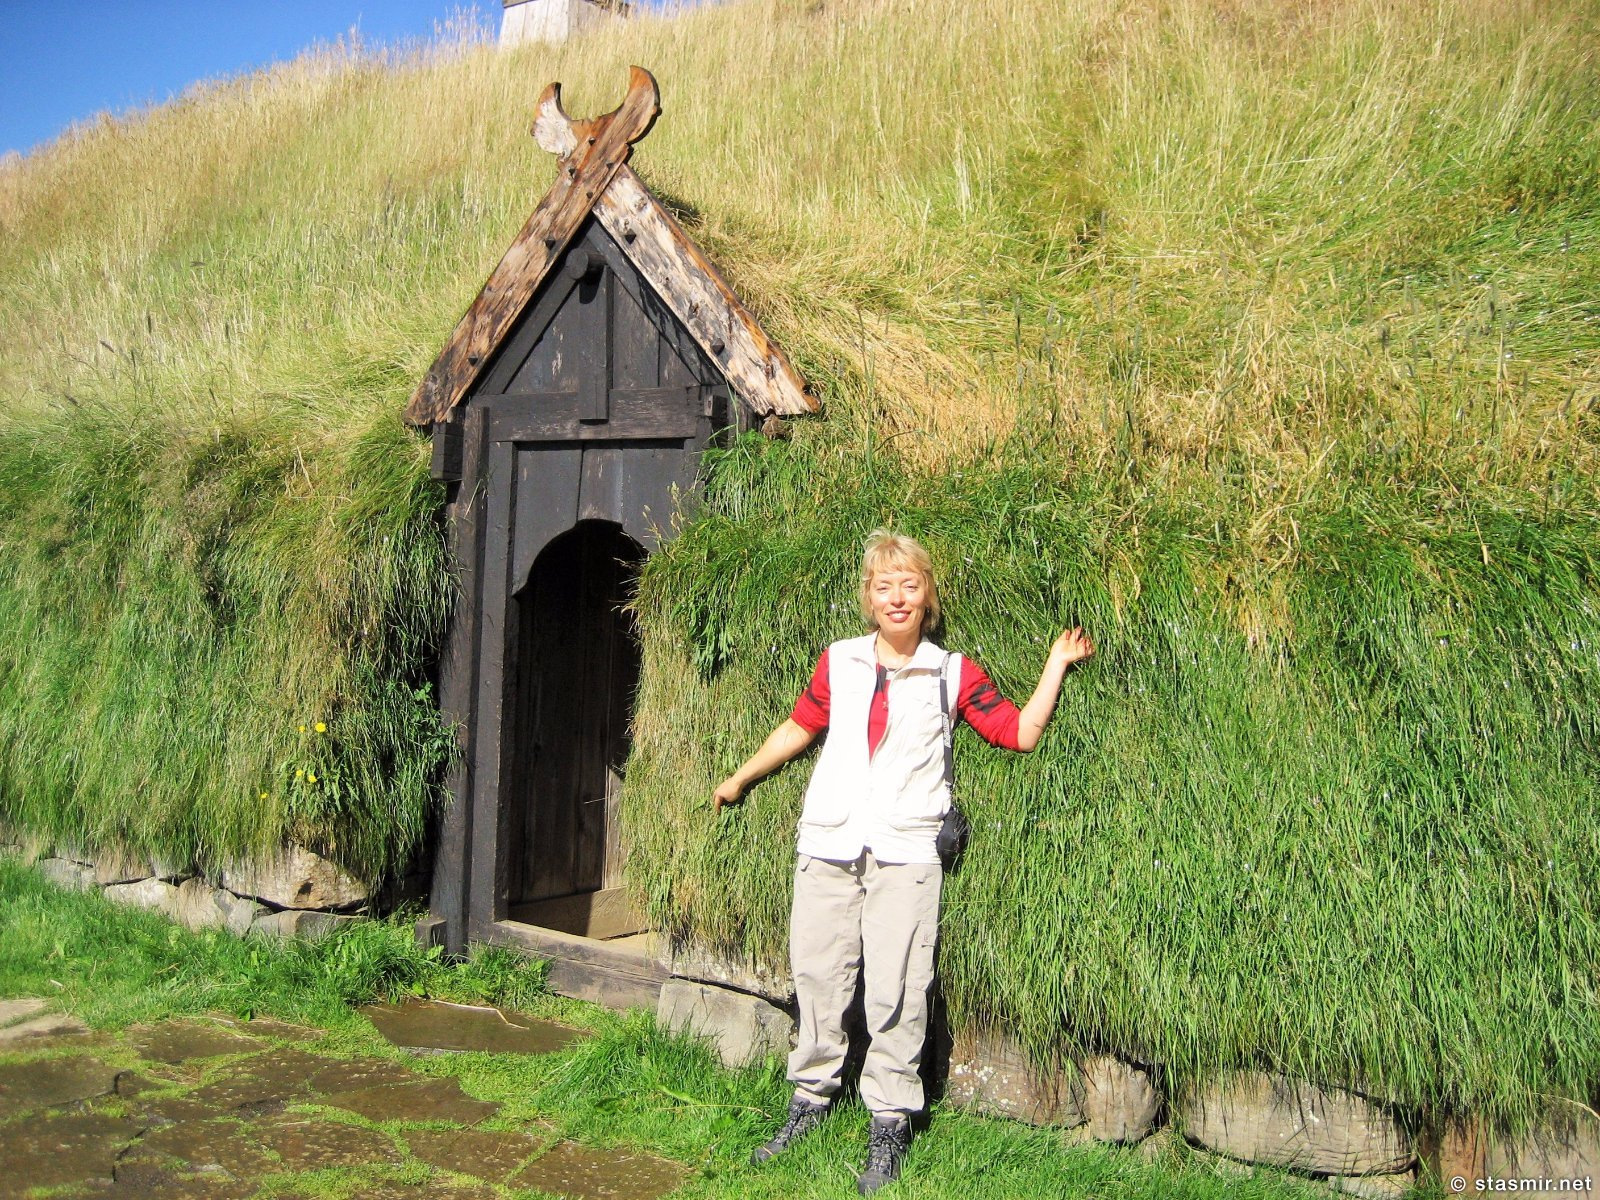 Þjóðveldisbærinn Stöng - это восстановленный торфяной дом в Южной Исландии на маршруте Ландманналёйгюр, фото Стасмир, Photo Stasmir